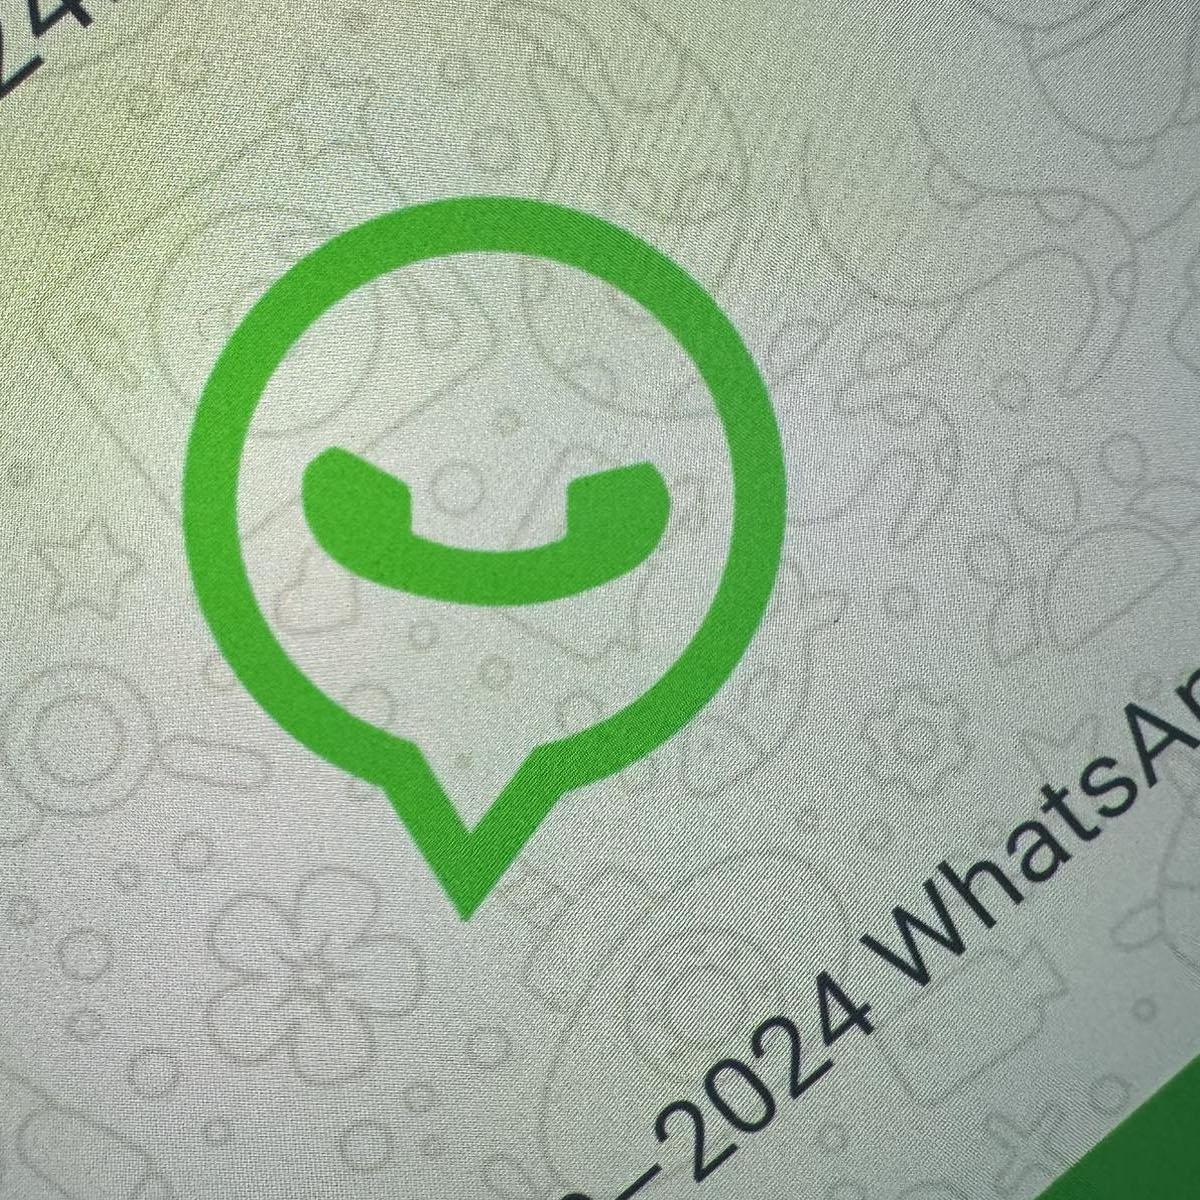 Móviles sin Whatsapp el 29 de febrero, pero con novedades en marzo